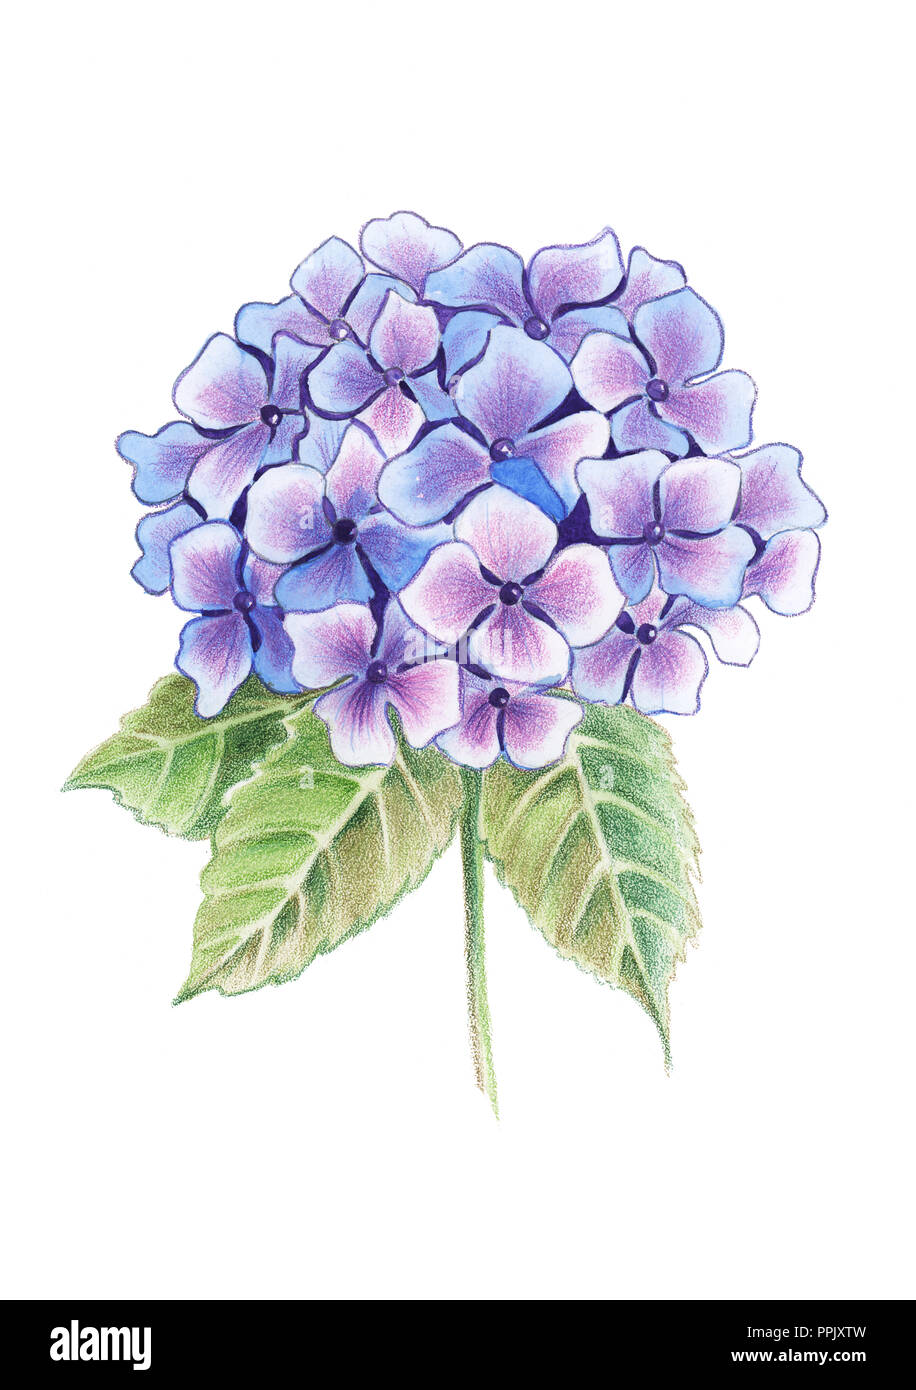 Illustration de dessin crayons de couleur l'hydrangea fleurs dans un bouquet sur fond isolé Banque D'Images